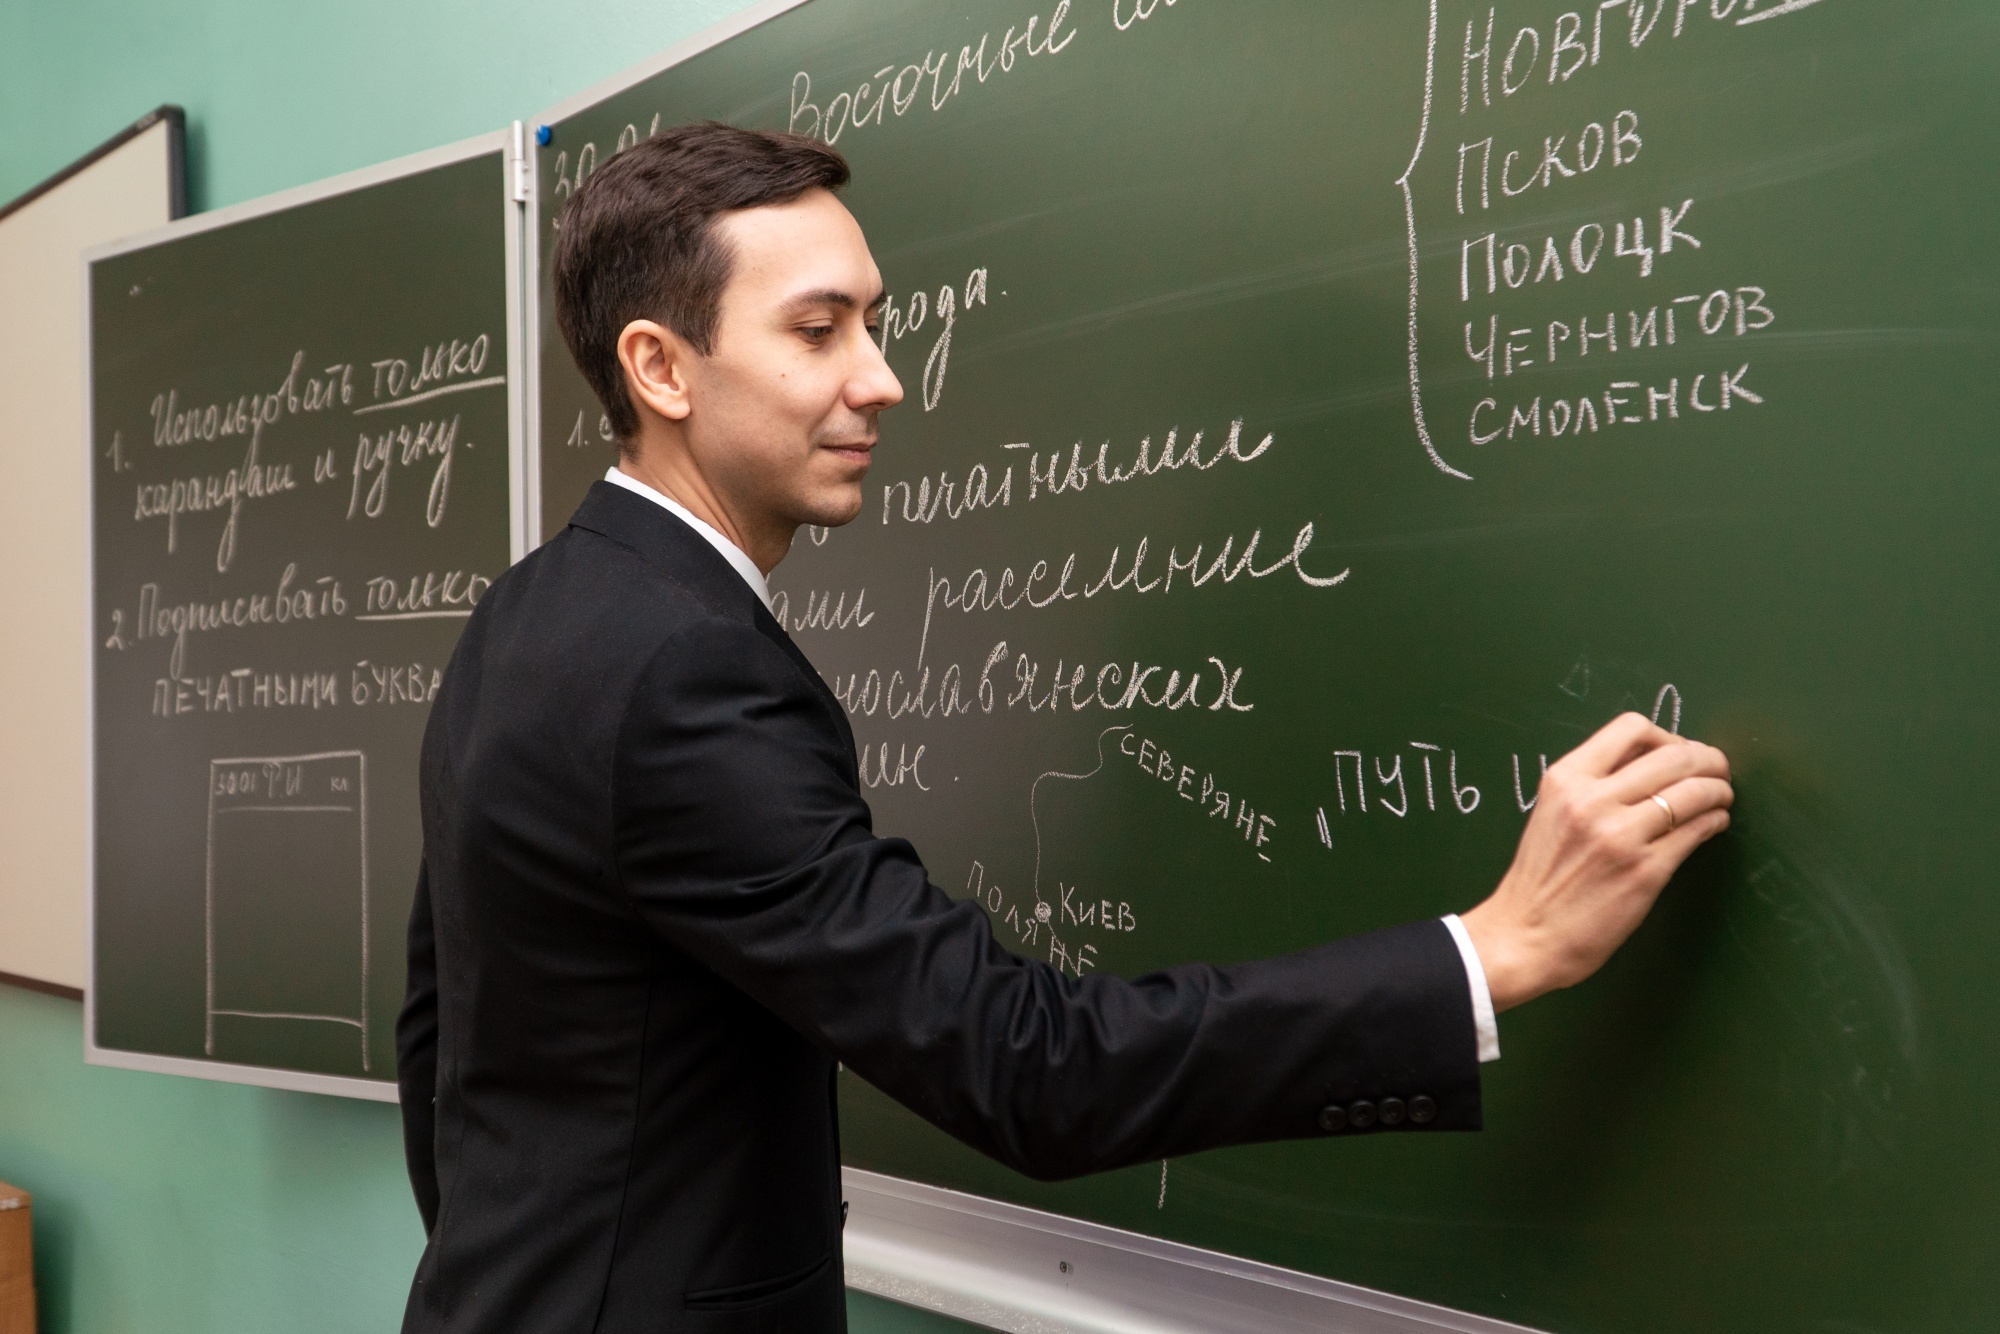 В Год педагога и наставника 1 250 лучших учителей России удостоены премии за достижения в педагогической деятельности